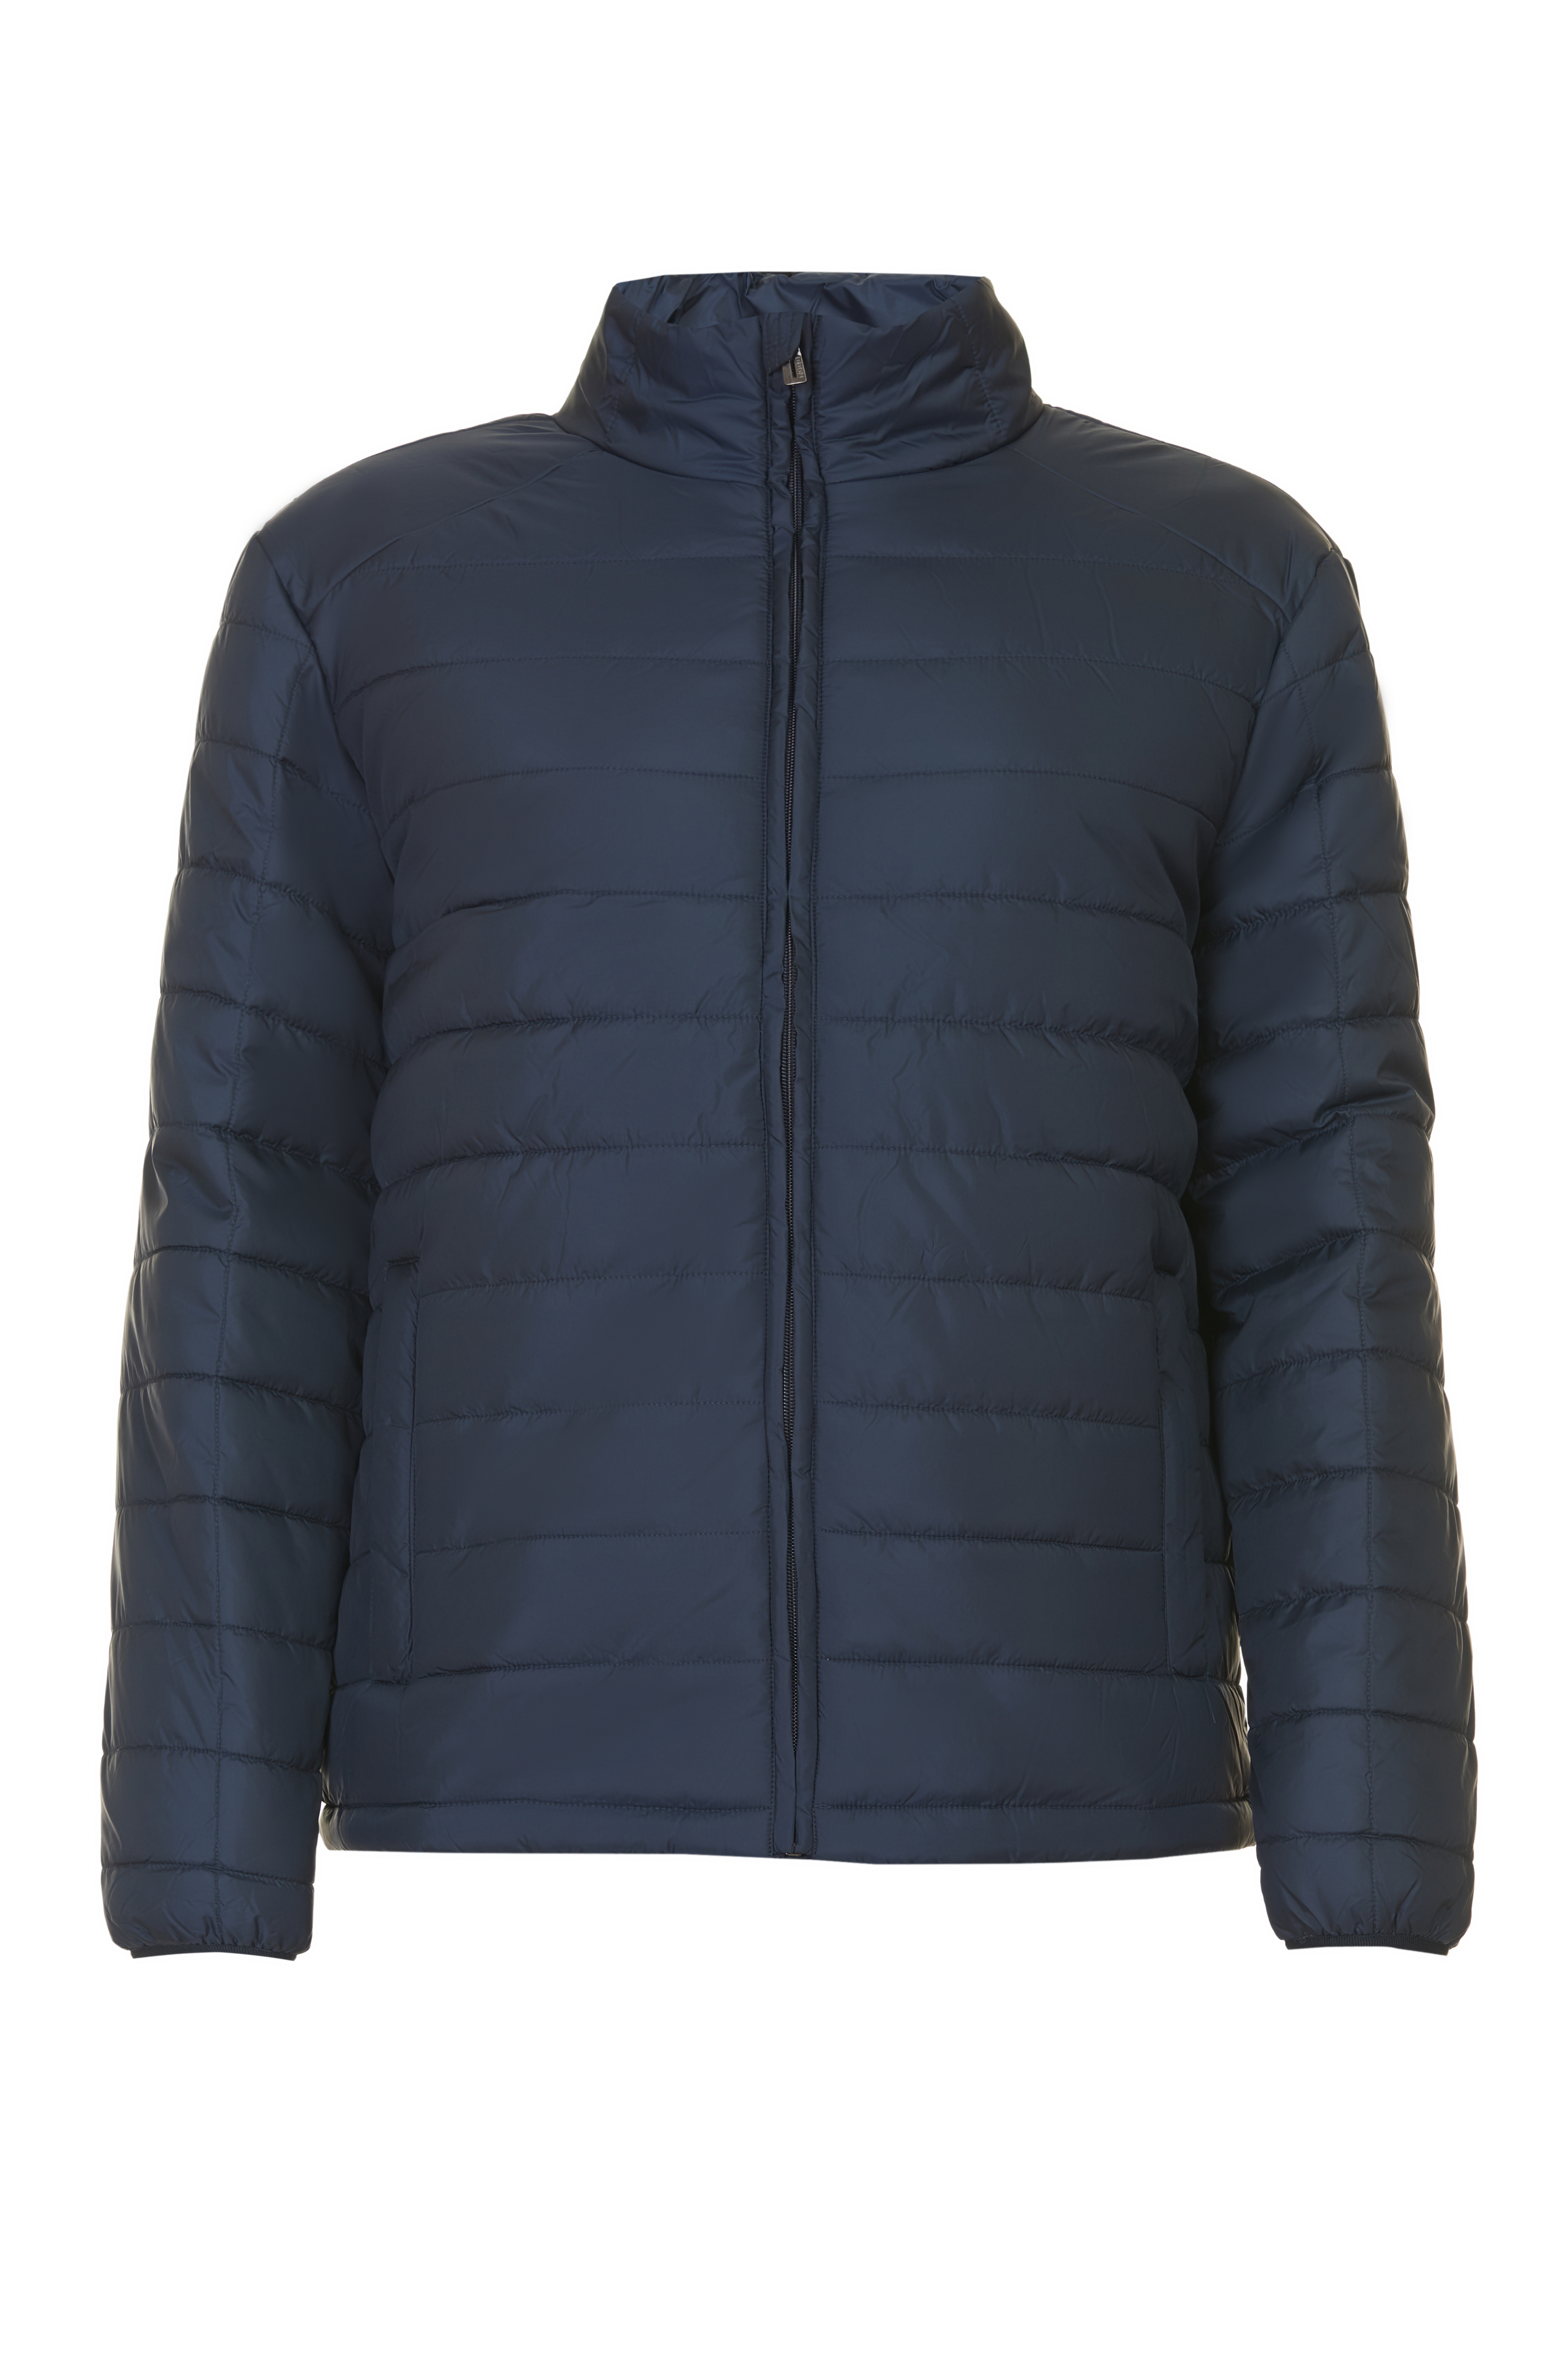 Базовая куртка (арт. baon B537701), размер XXL, цвет синий Базовая куртка (арт. baon B537701) - фото 3